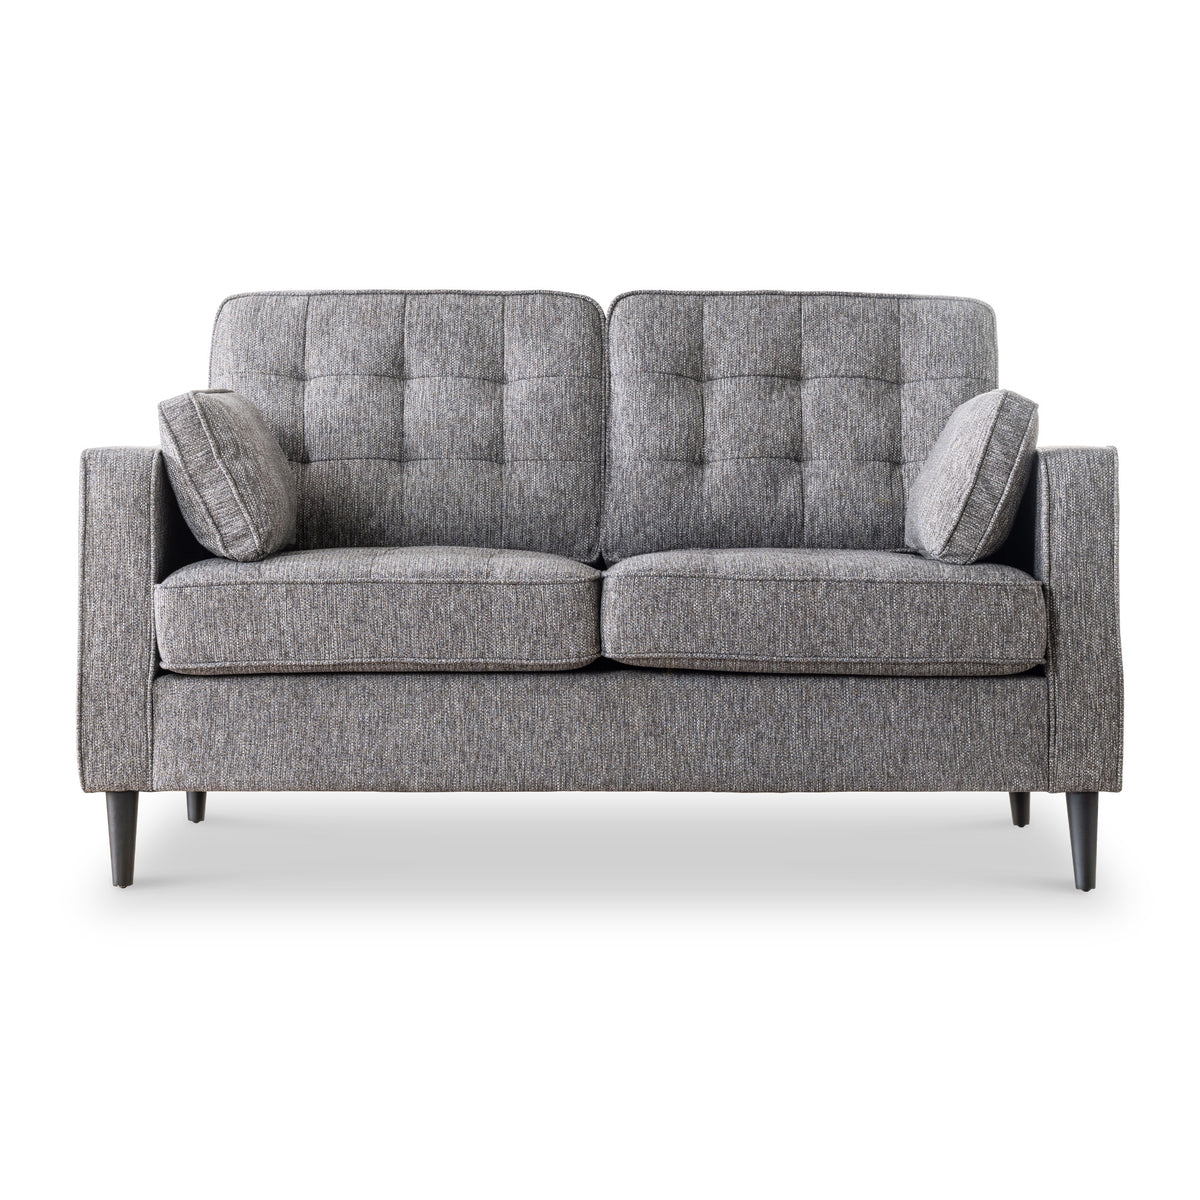 Blake Grey 2 Seater Sofa from Roseland Furniture